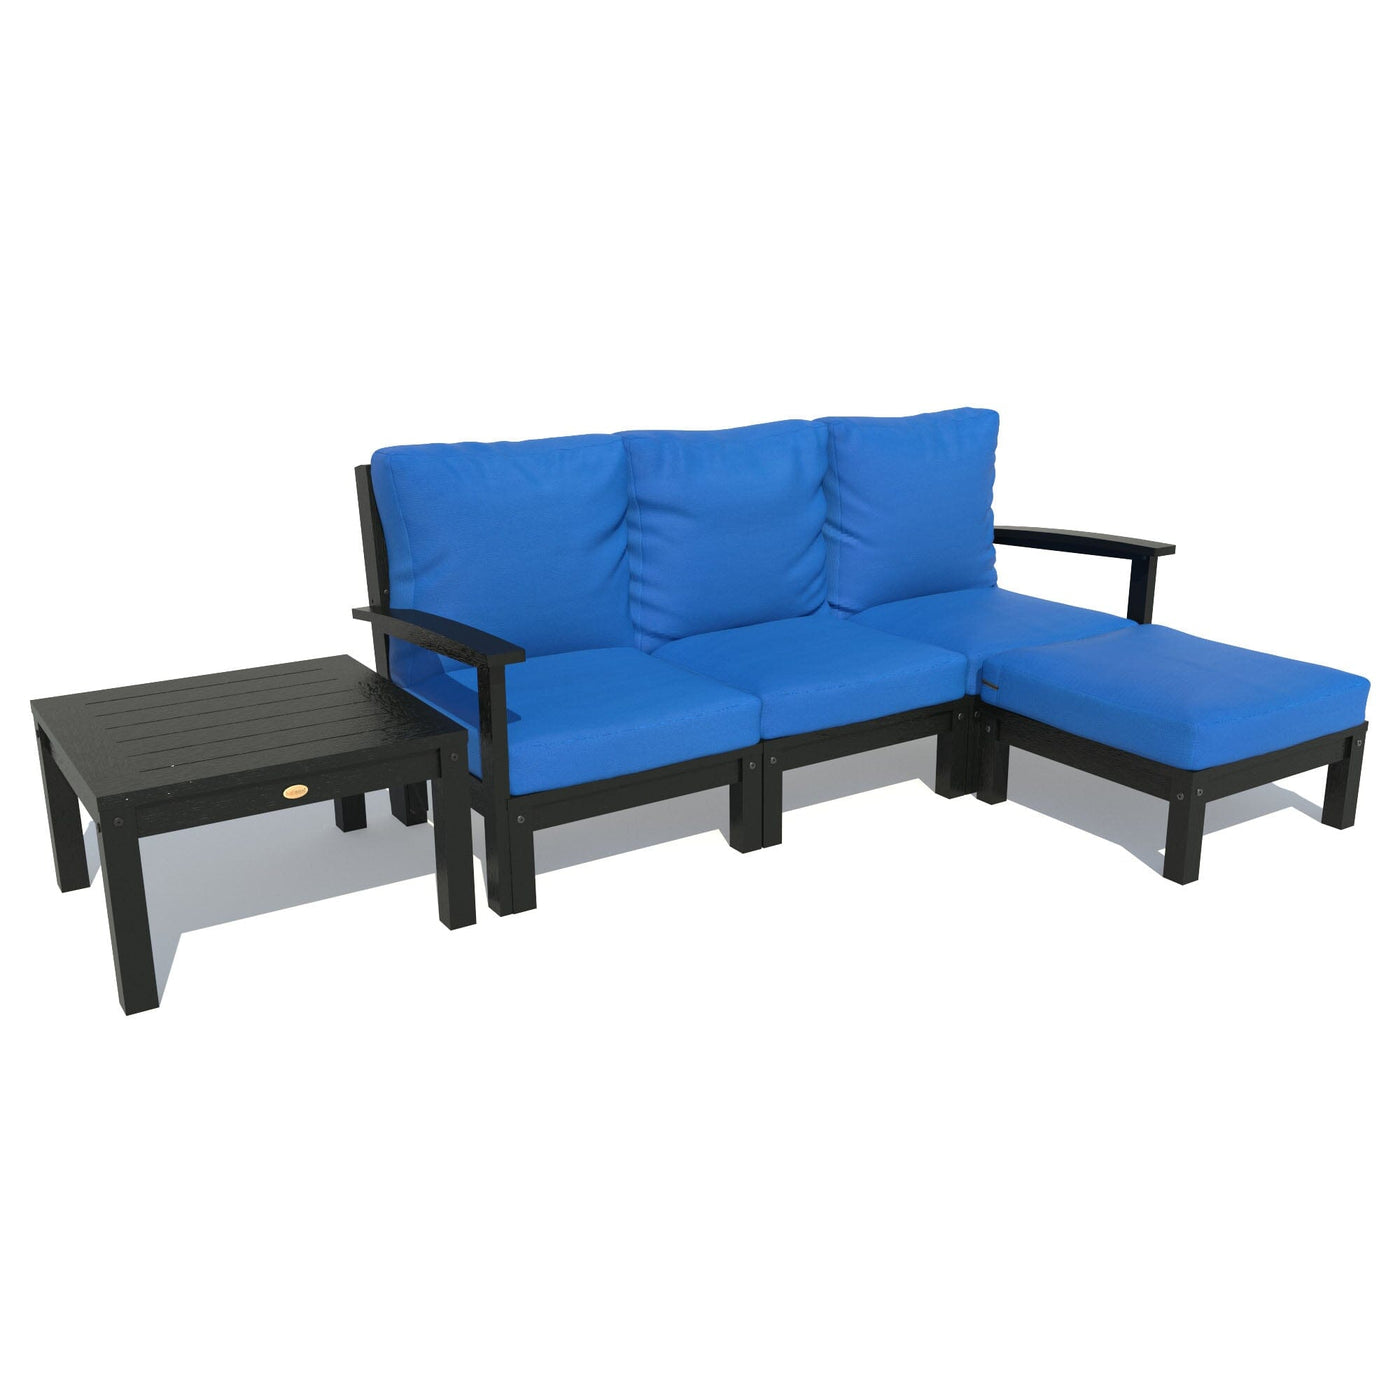 Bespoke Deep Seating: Sofa, Ottoman, and Side Table Deep Seating Highwood USA Cobalt Blue Black 